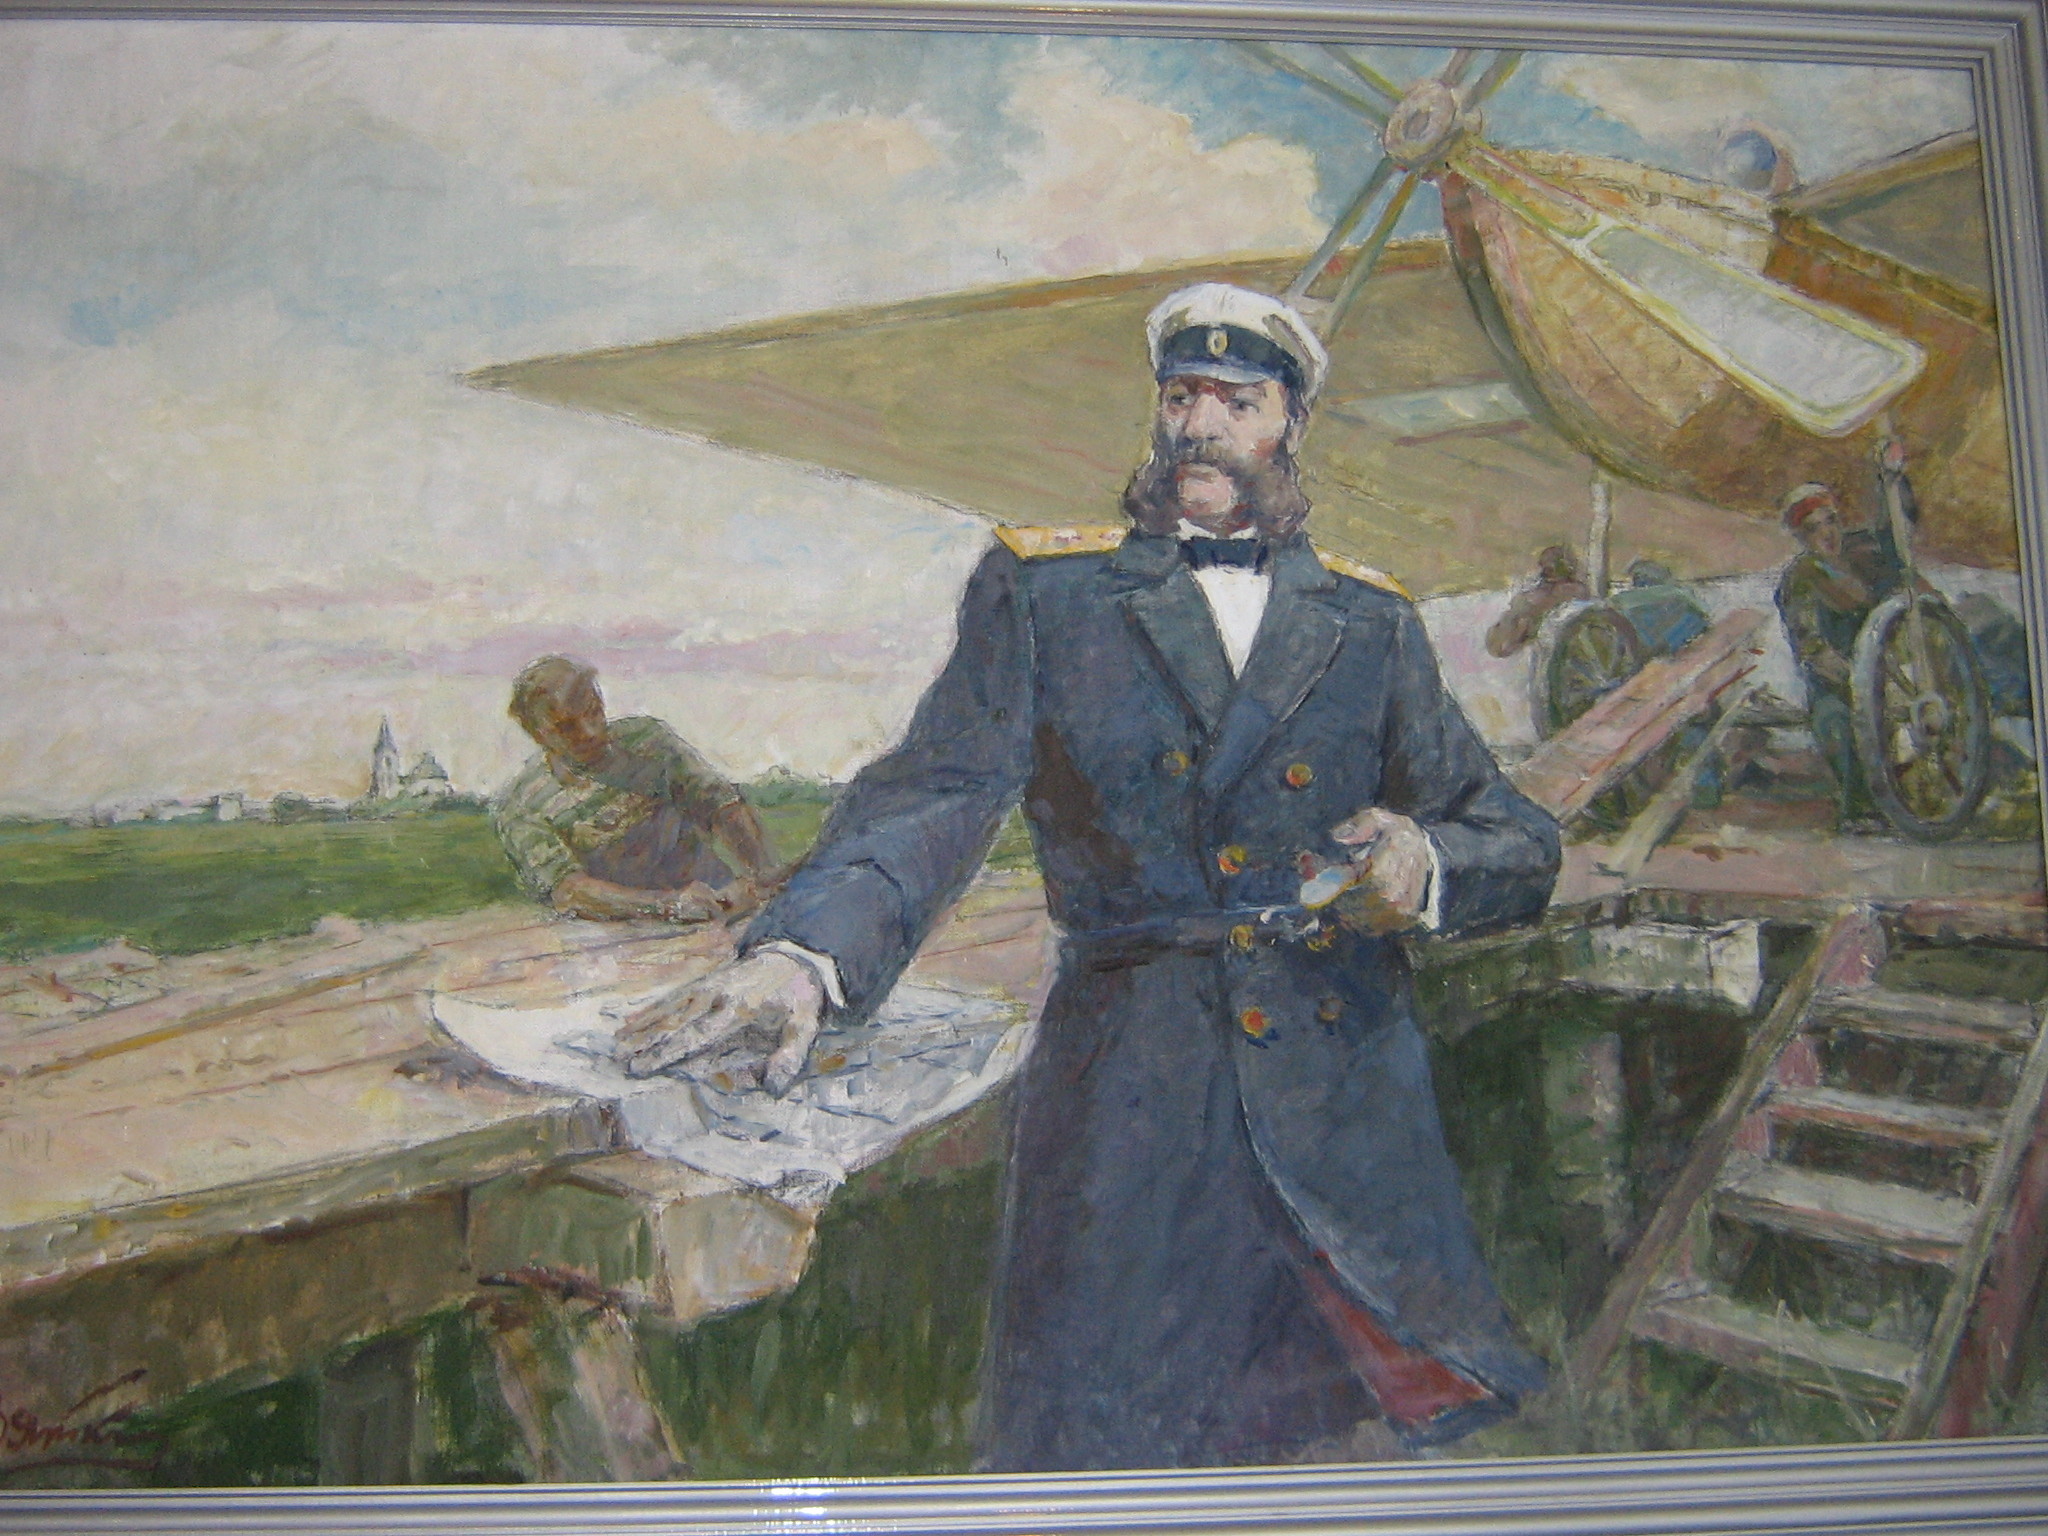 Русский изобретатель создавший первый самолет в 1882. А.Ф. Можайского (1825–1890).